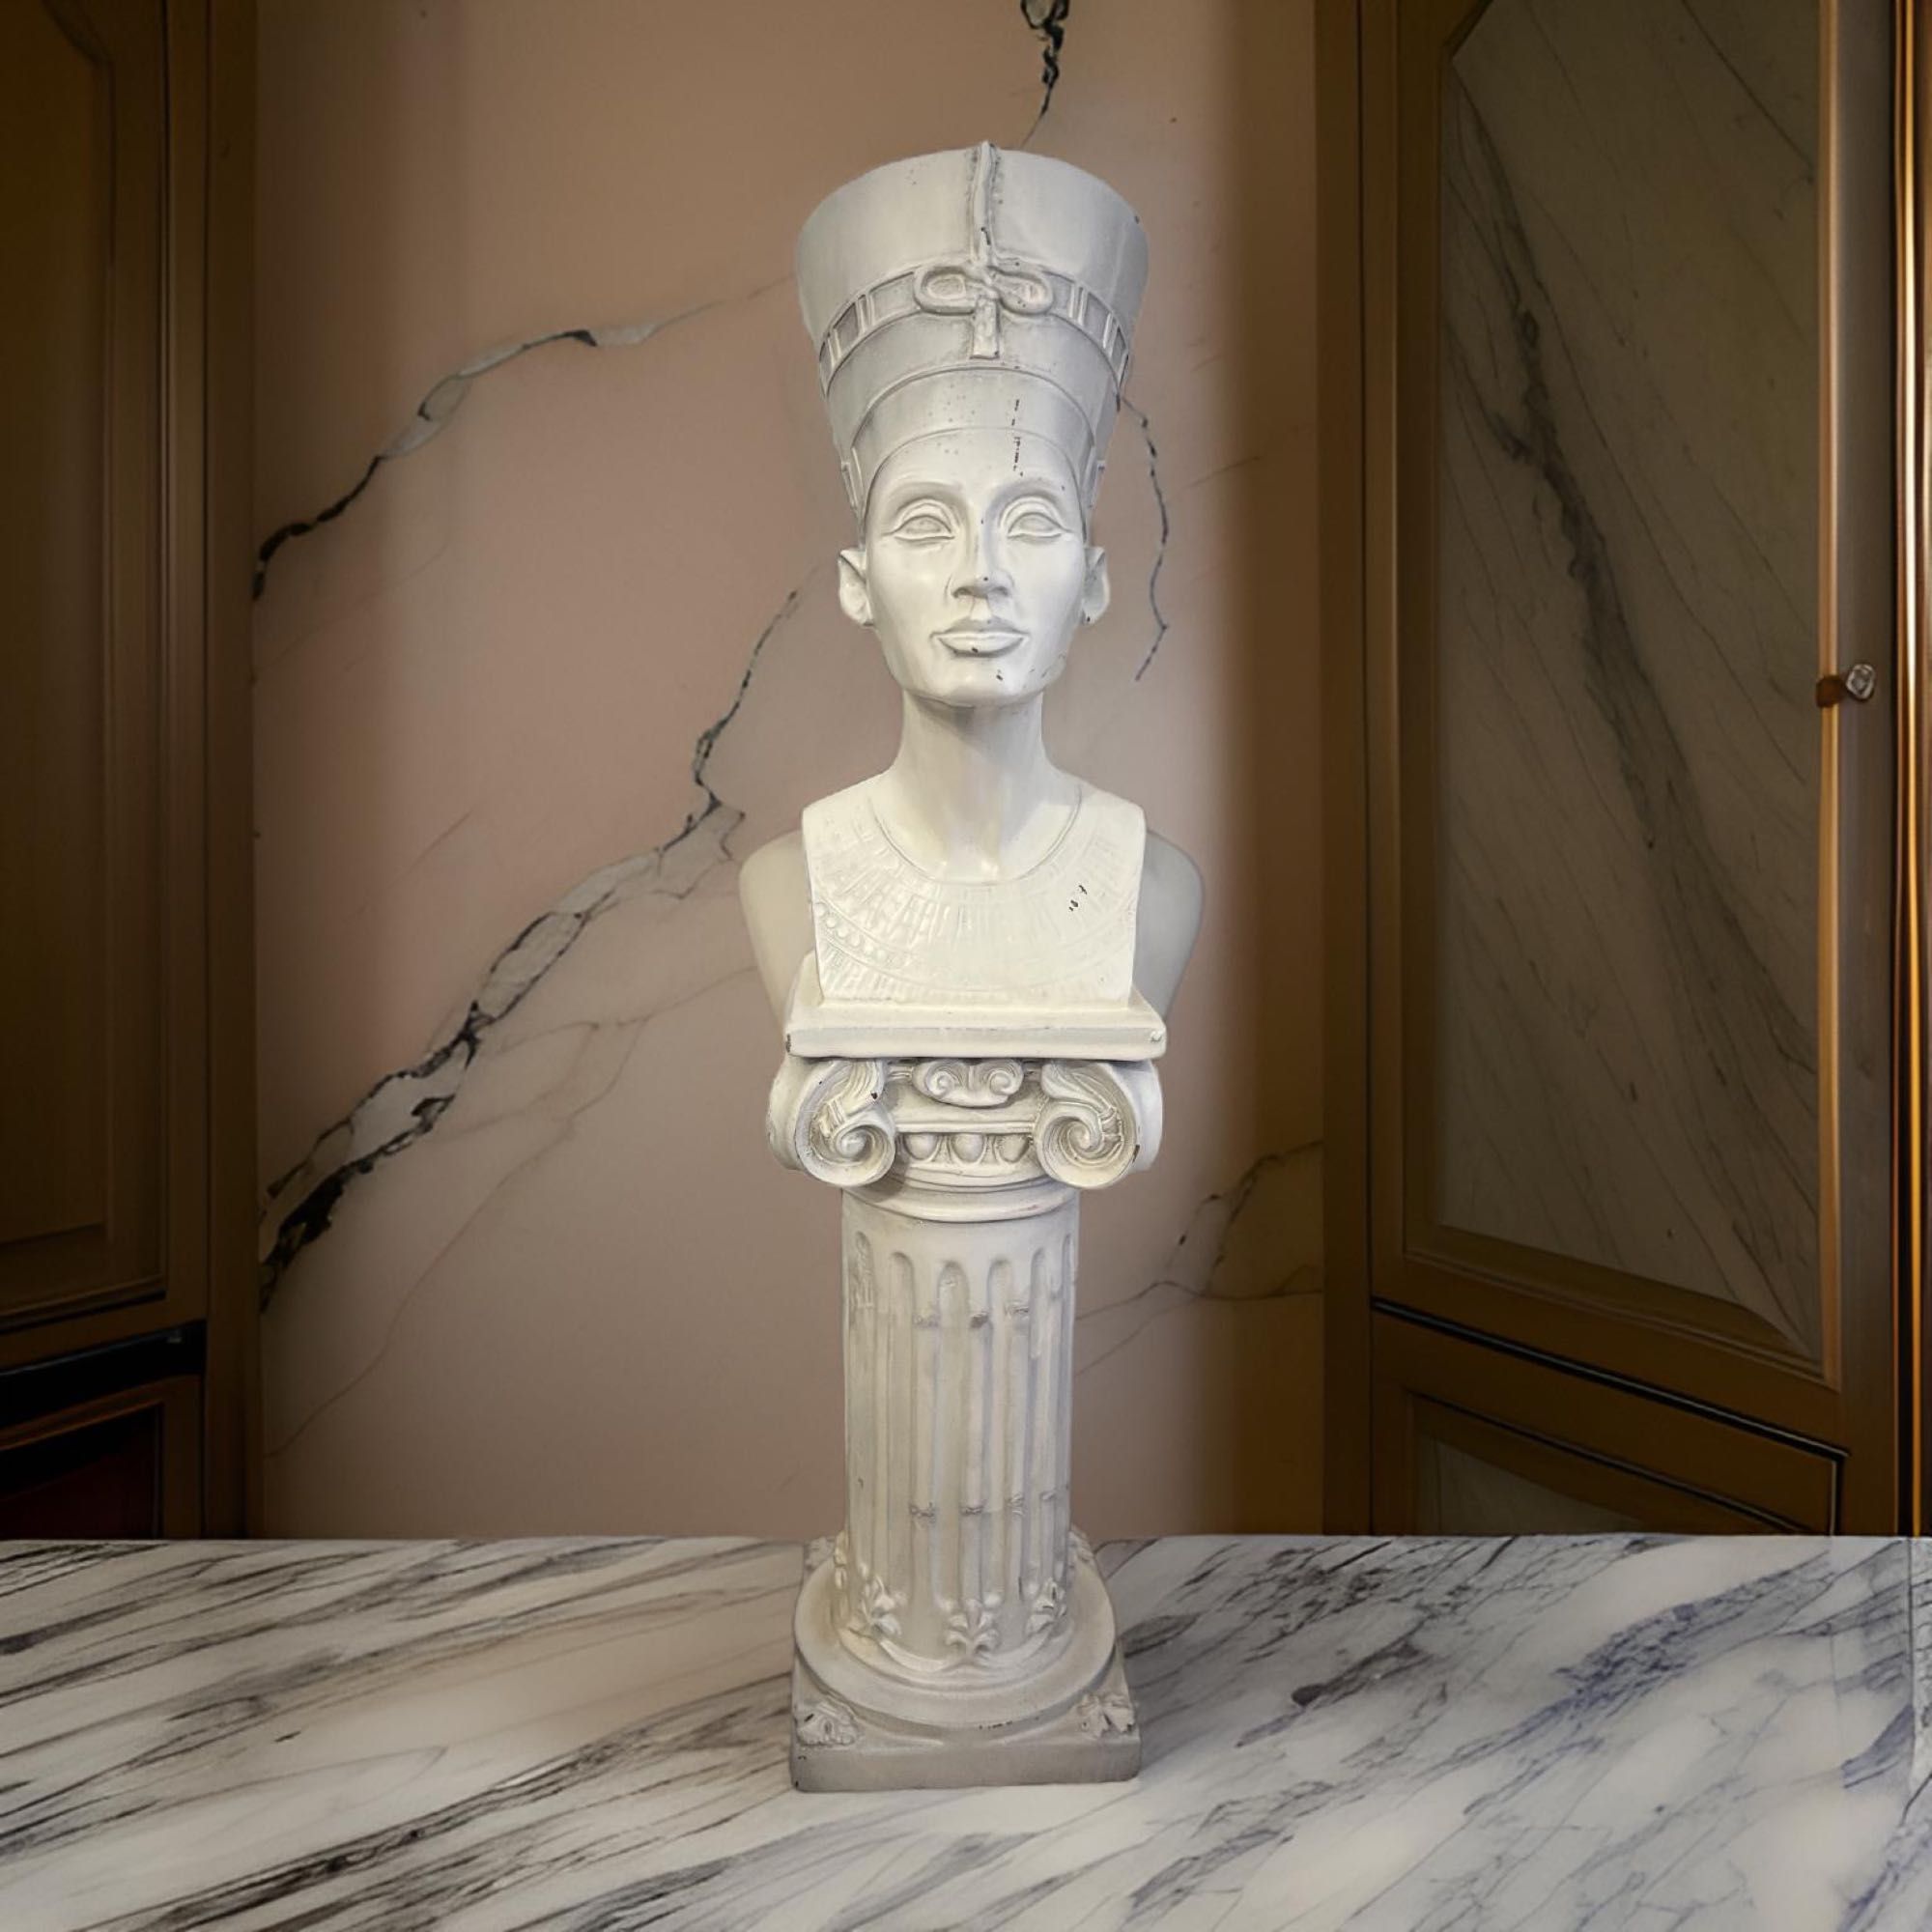 Nefretete na kolumnie, posąg z Egiptu, wysokość około 40 cm